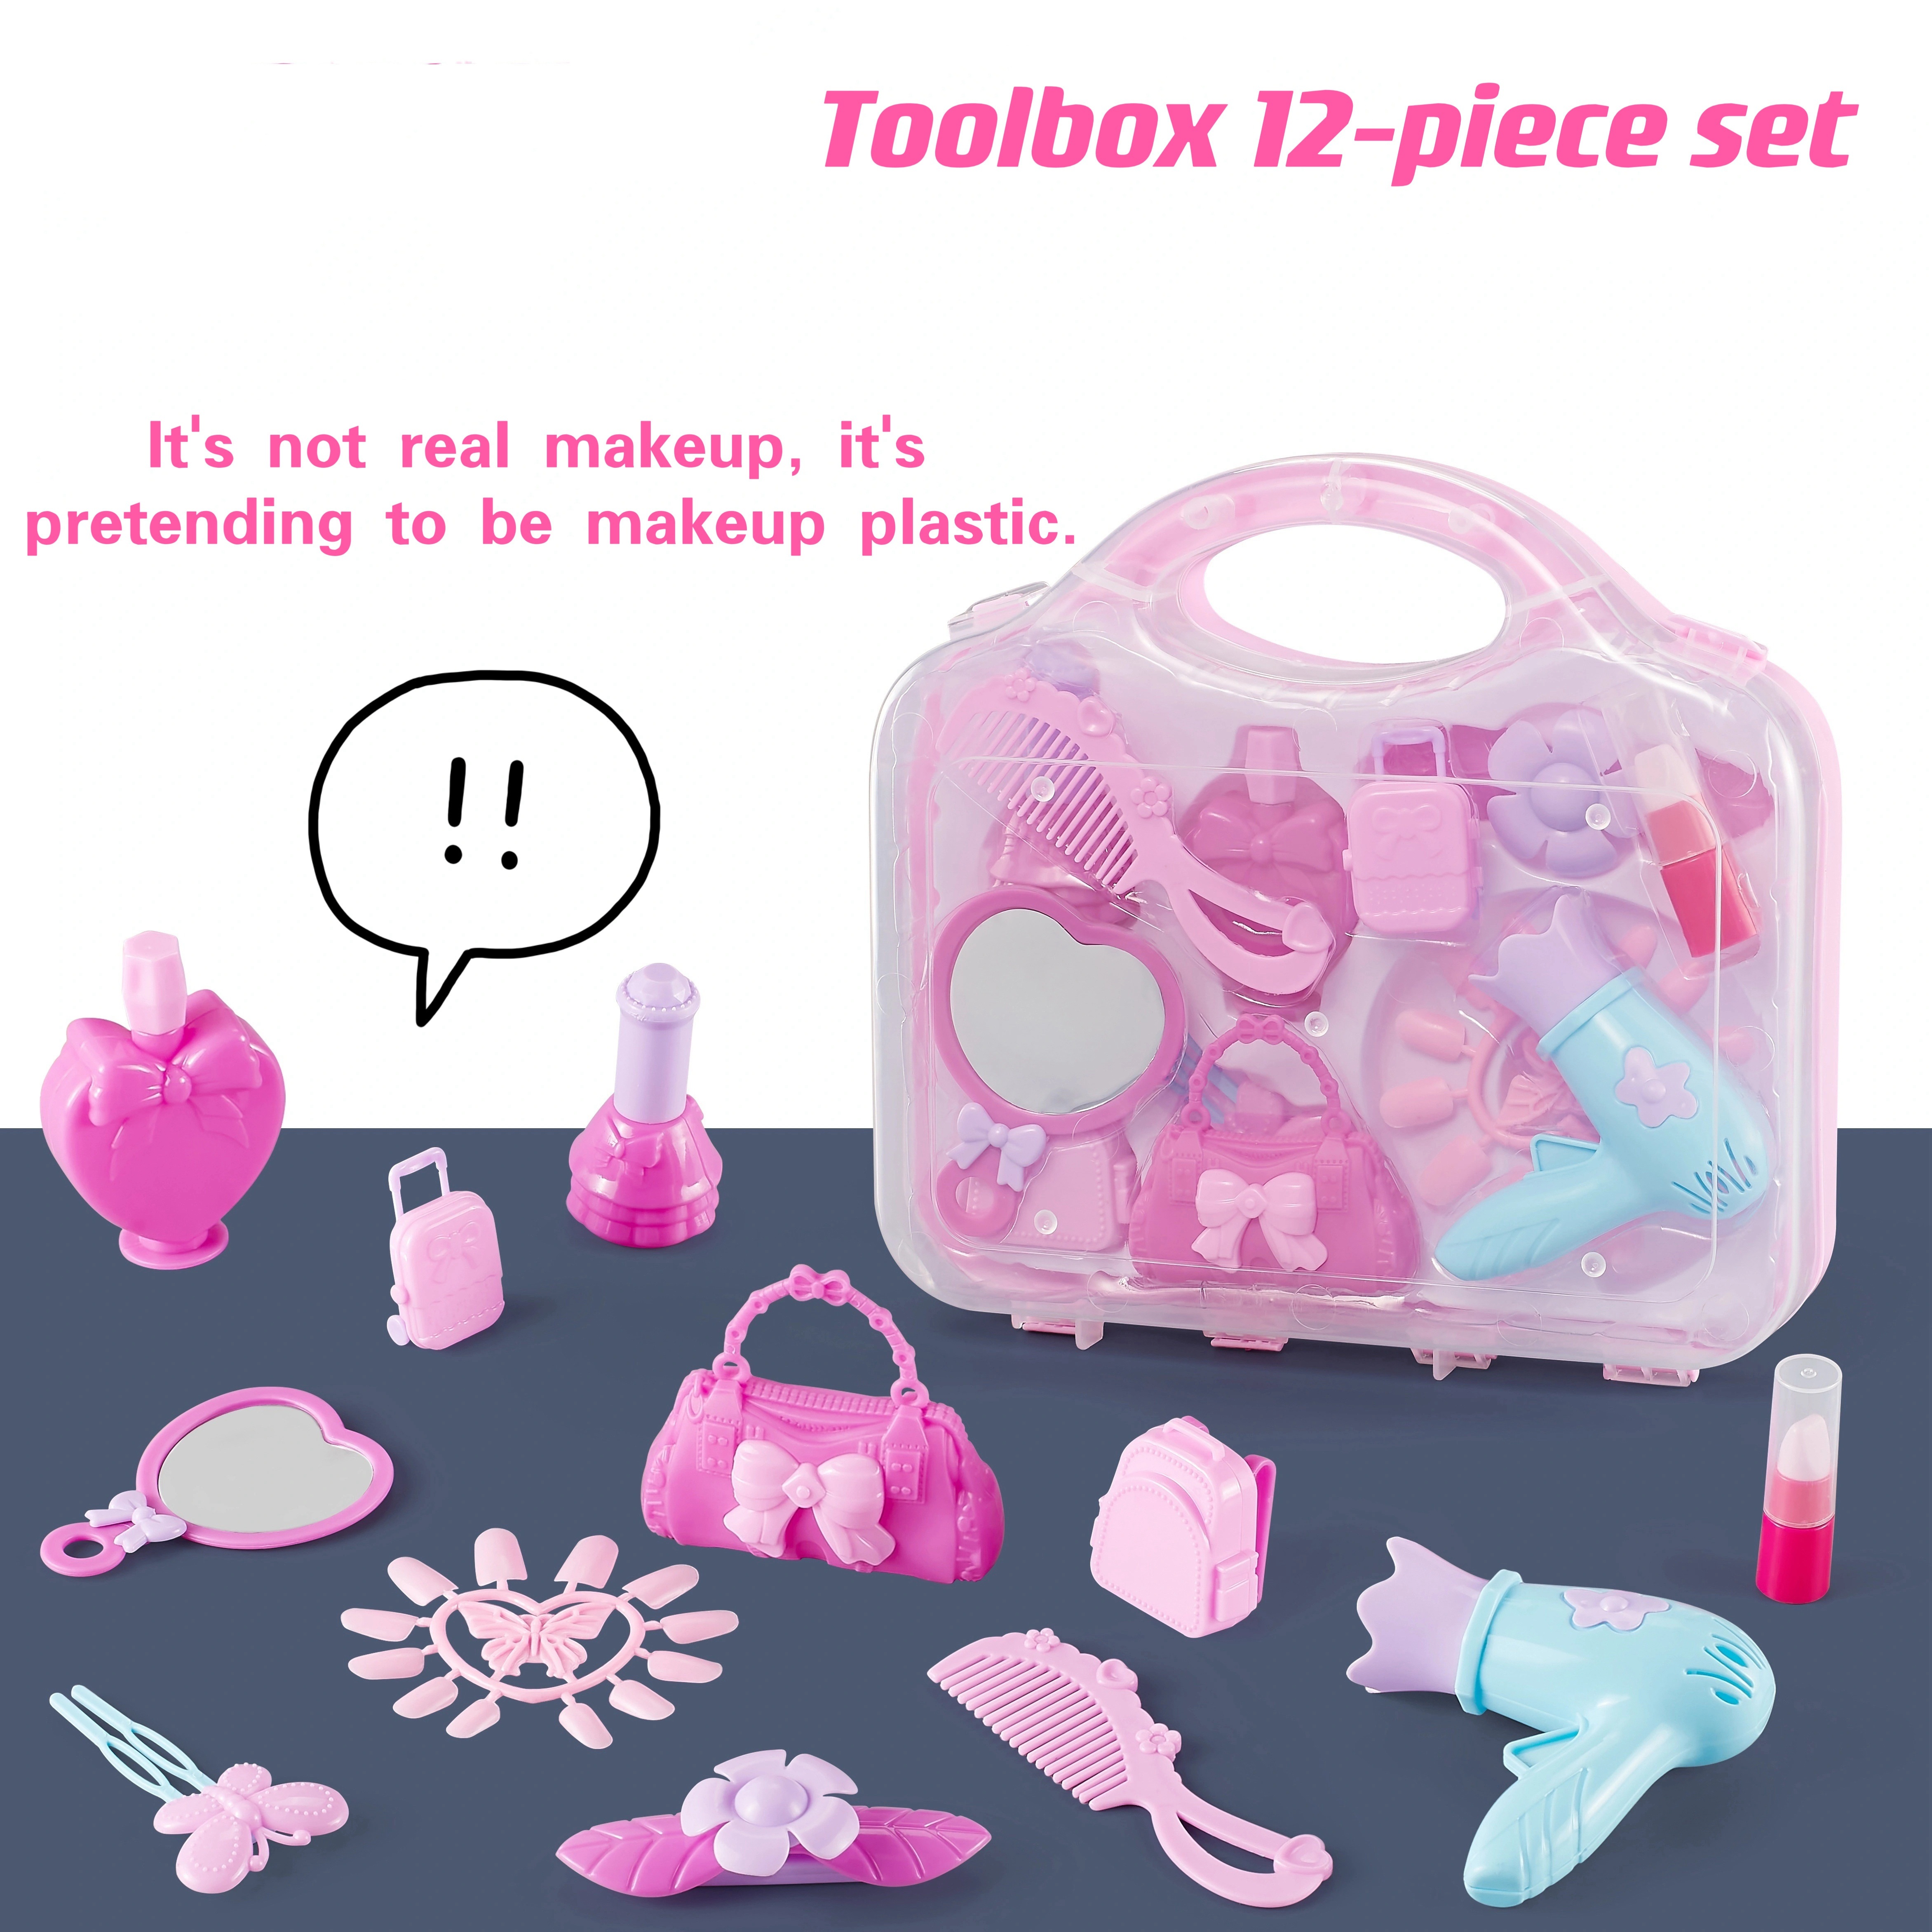 Kaufe Kinder Make-Up Spielzeug Kit Für Mädchen Waschbar Kosmetik